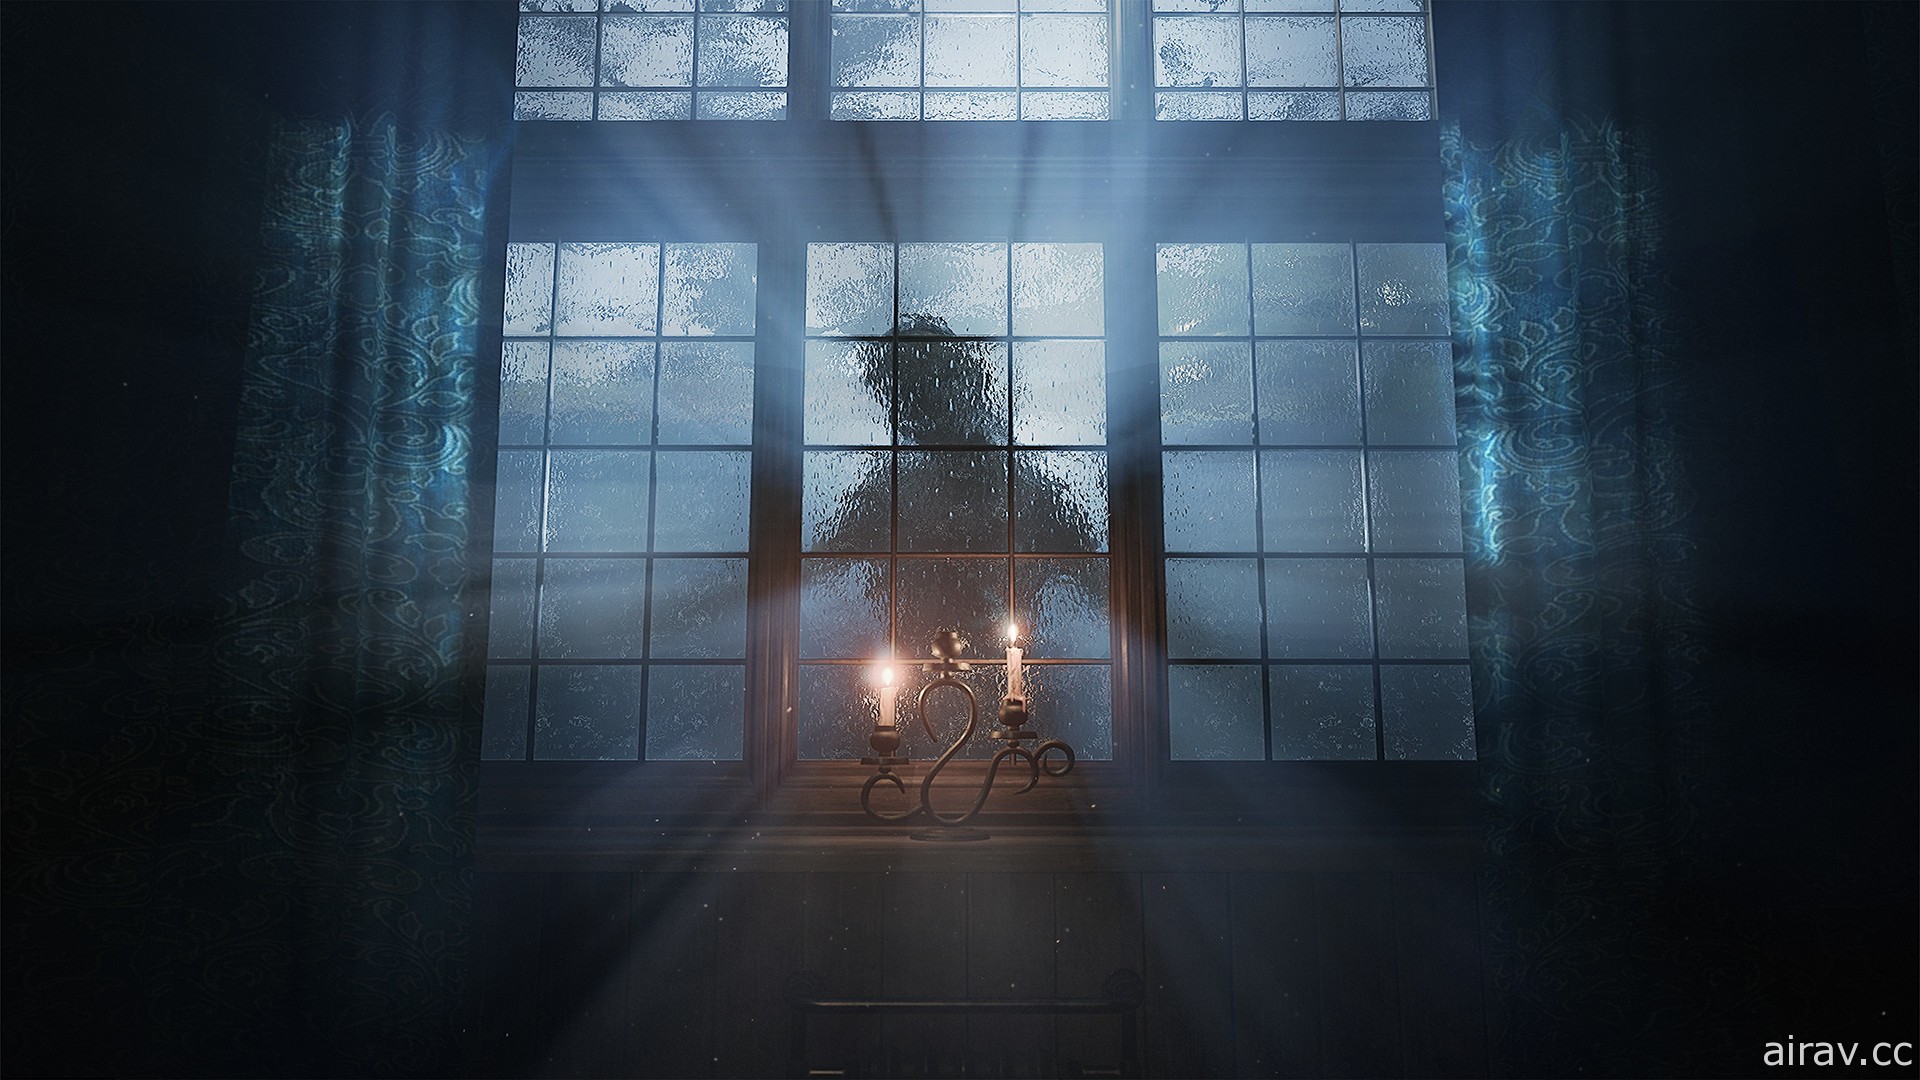 迷幻恐怖游戏《层层恐惧（2022）》公开宣传影片 采用 UE5 引擎打造发自内心的恐怖体验